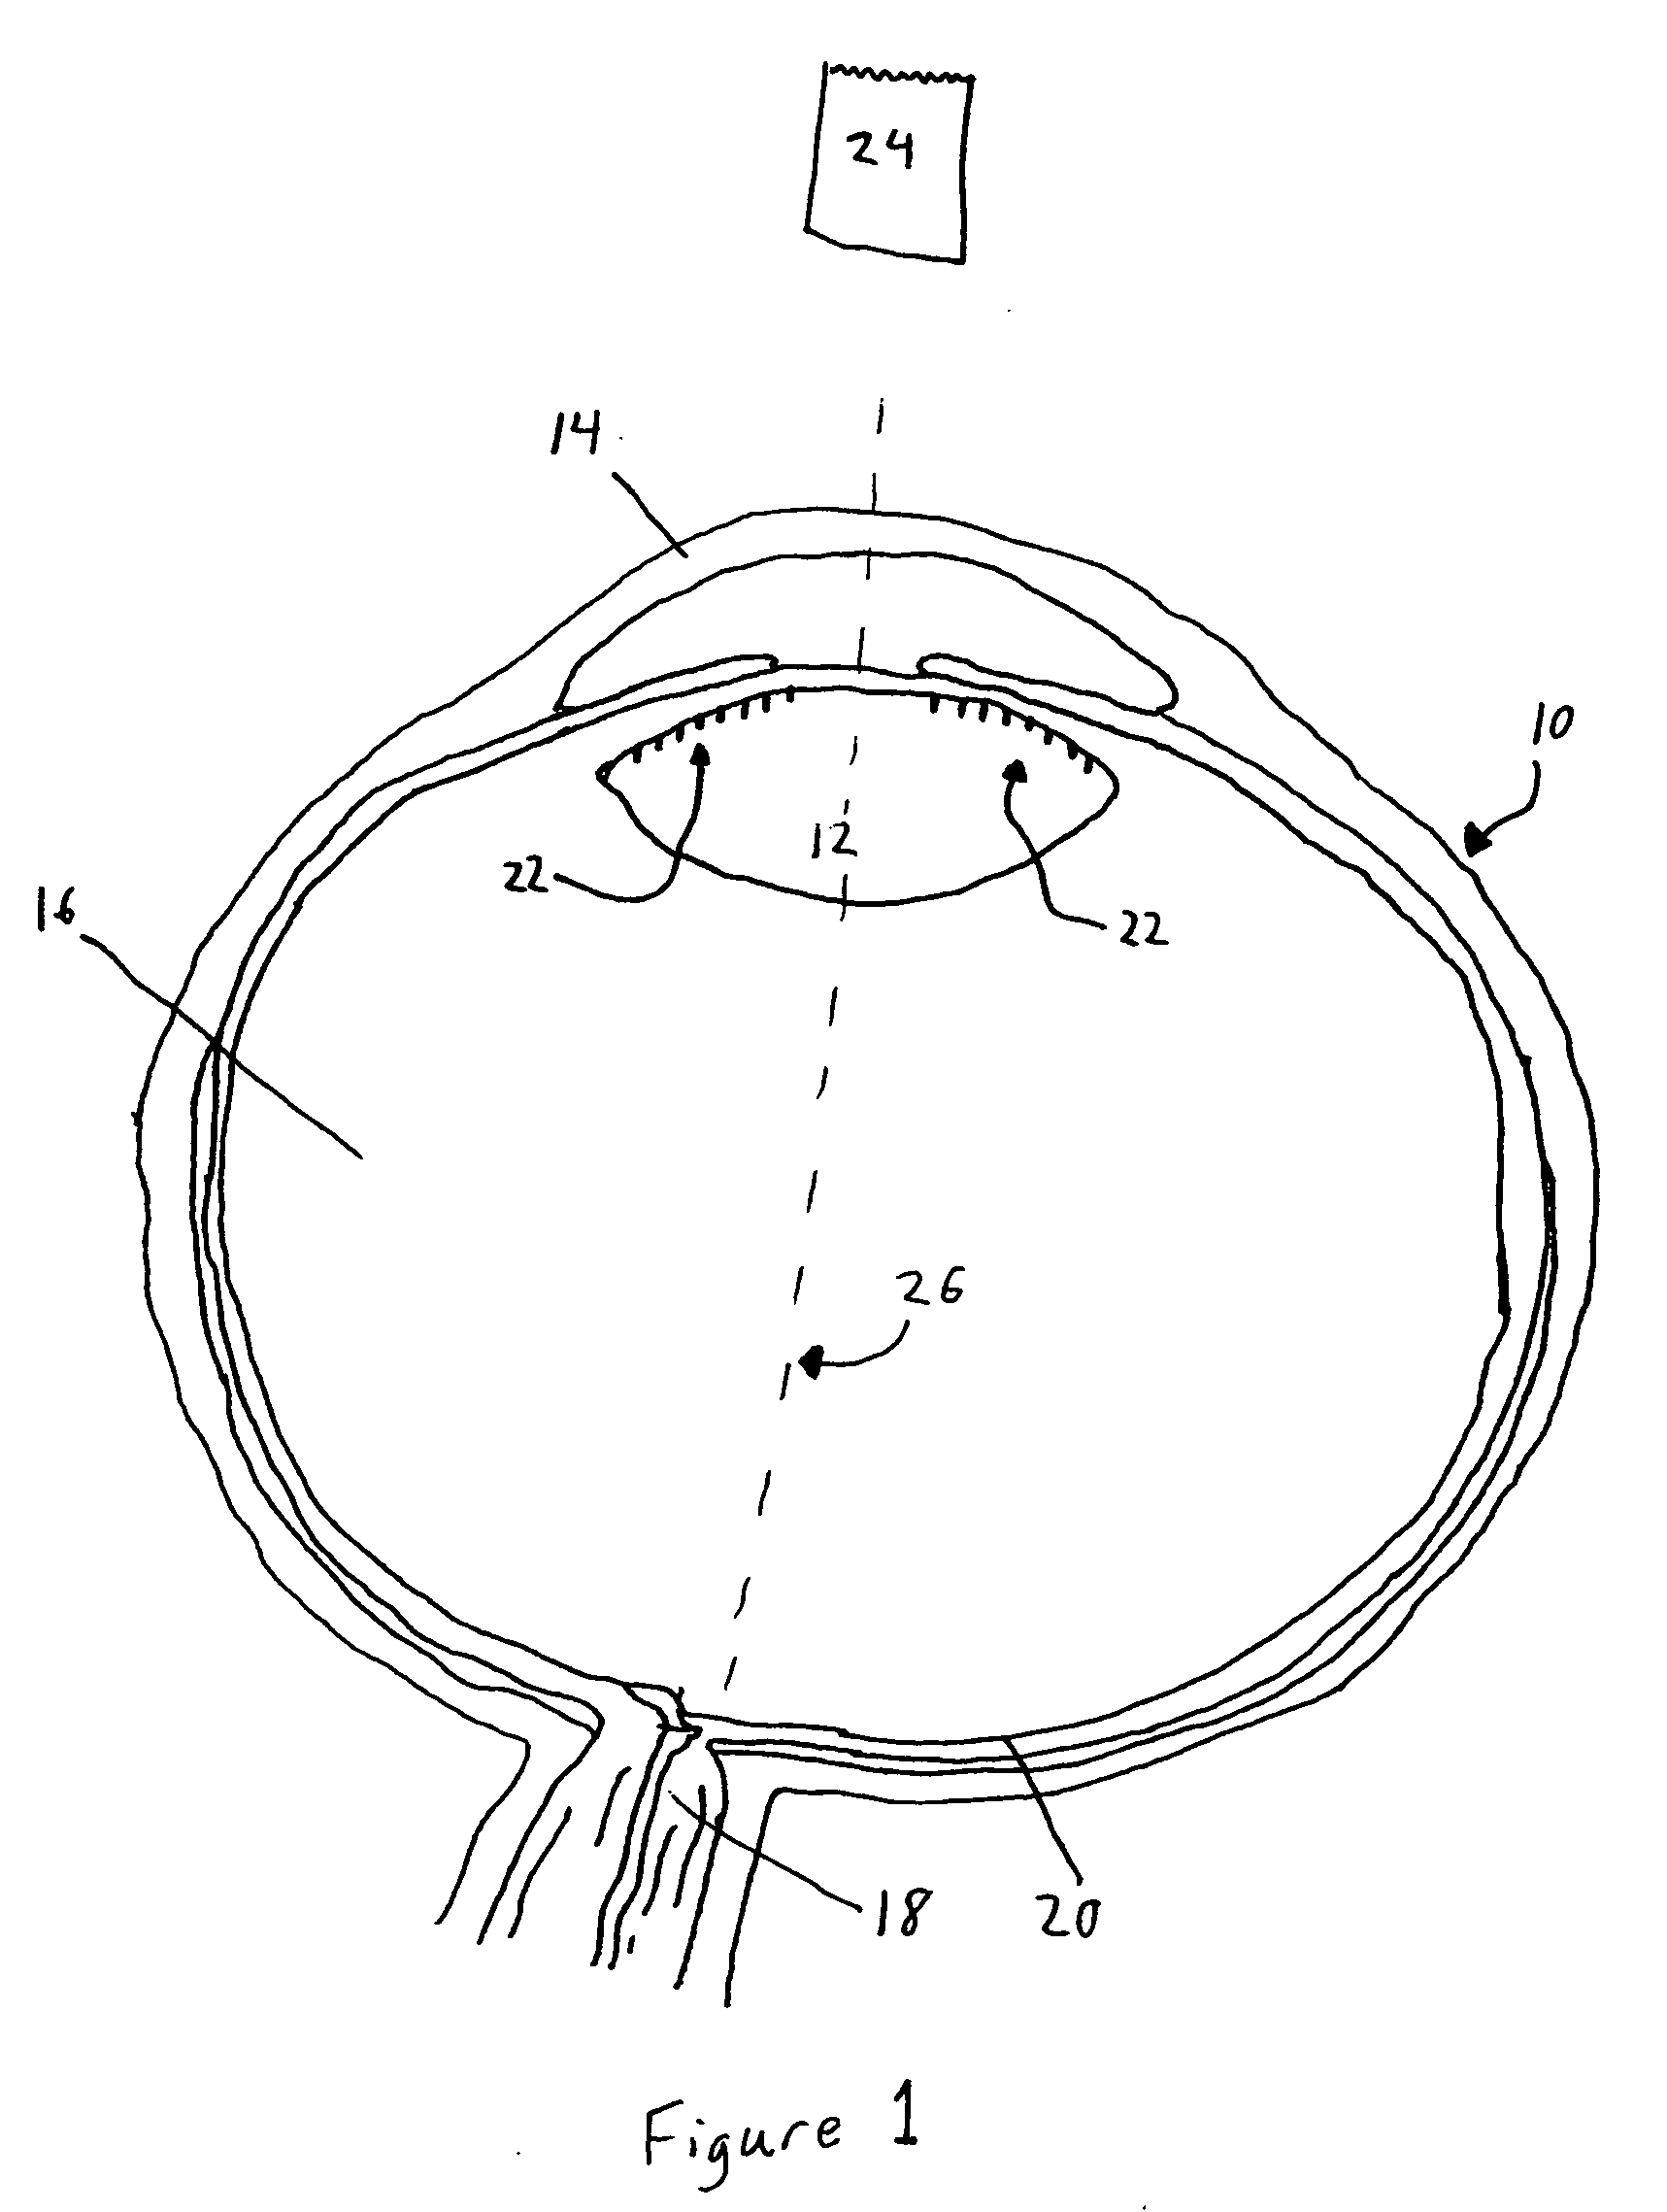 Intraocular lens adapted for adjustment via laser after implantation